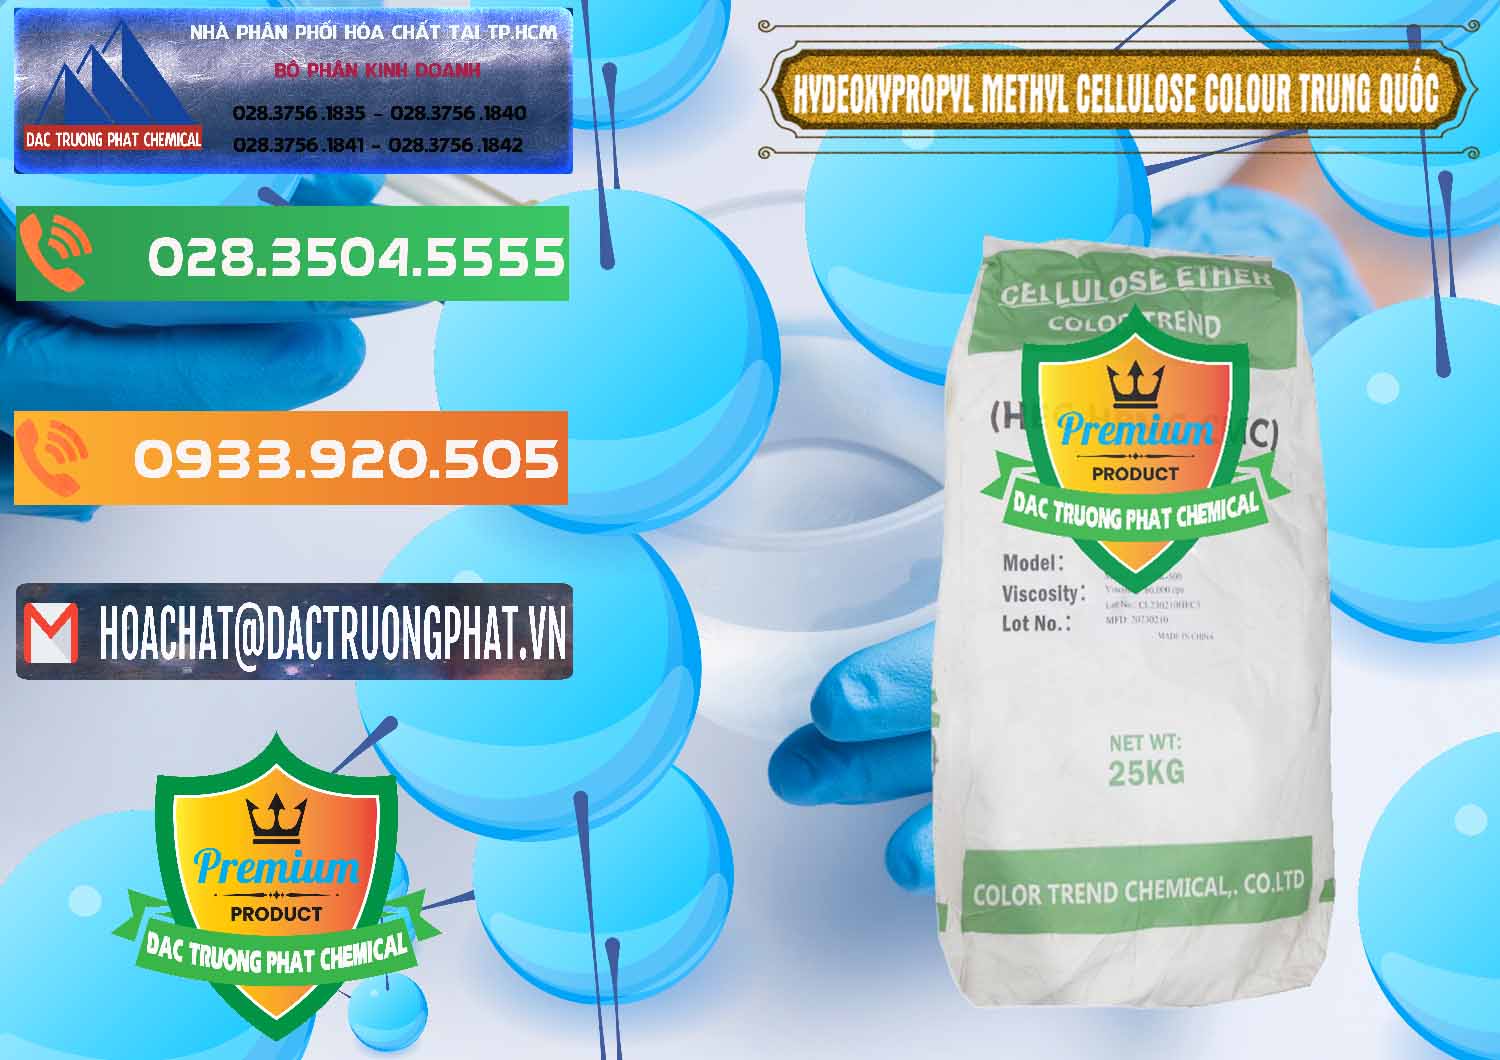 Bán - cung cấp Chất Tạo Đặc HPMC - Hydroxypropyl Methyl Cellulose Color Trung Quốc China - 0397 - Công ty phân phối và cung ứng hóa chất tại TP.HCM - hoachatxulynuoc.com.vn